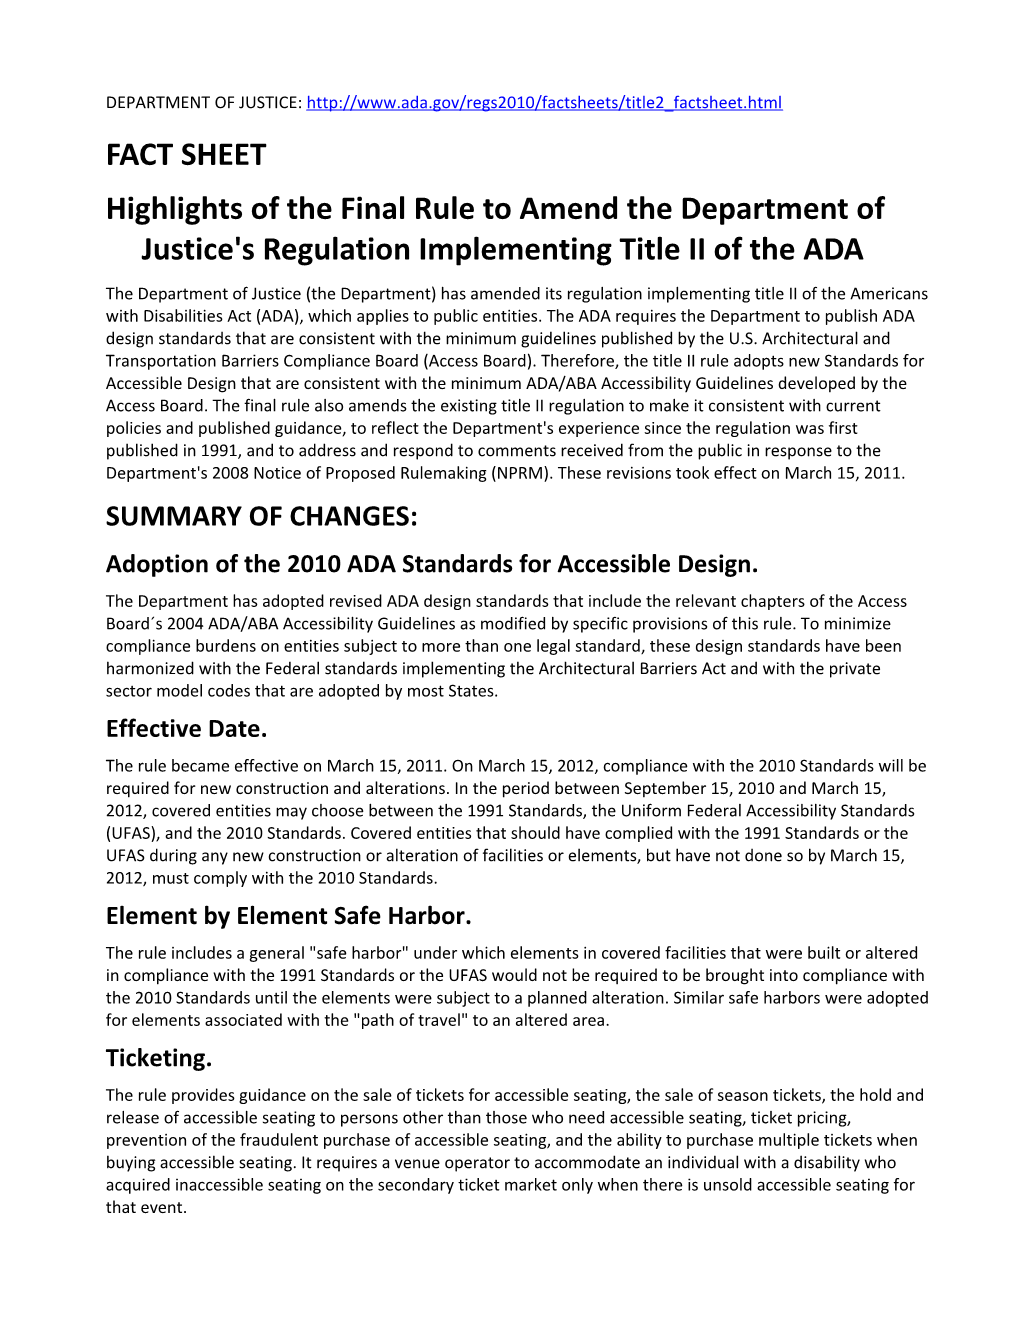 ADA Title II Factsheet, May 2013